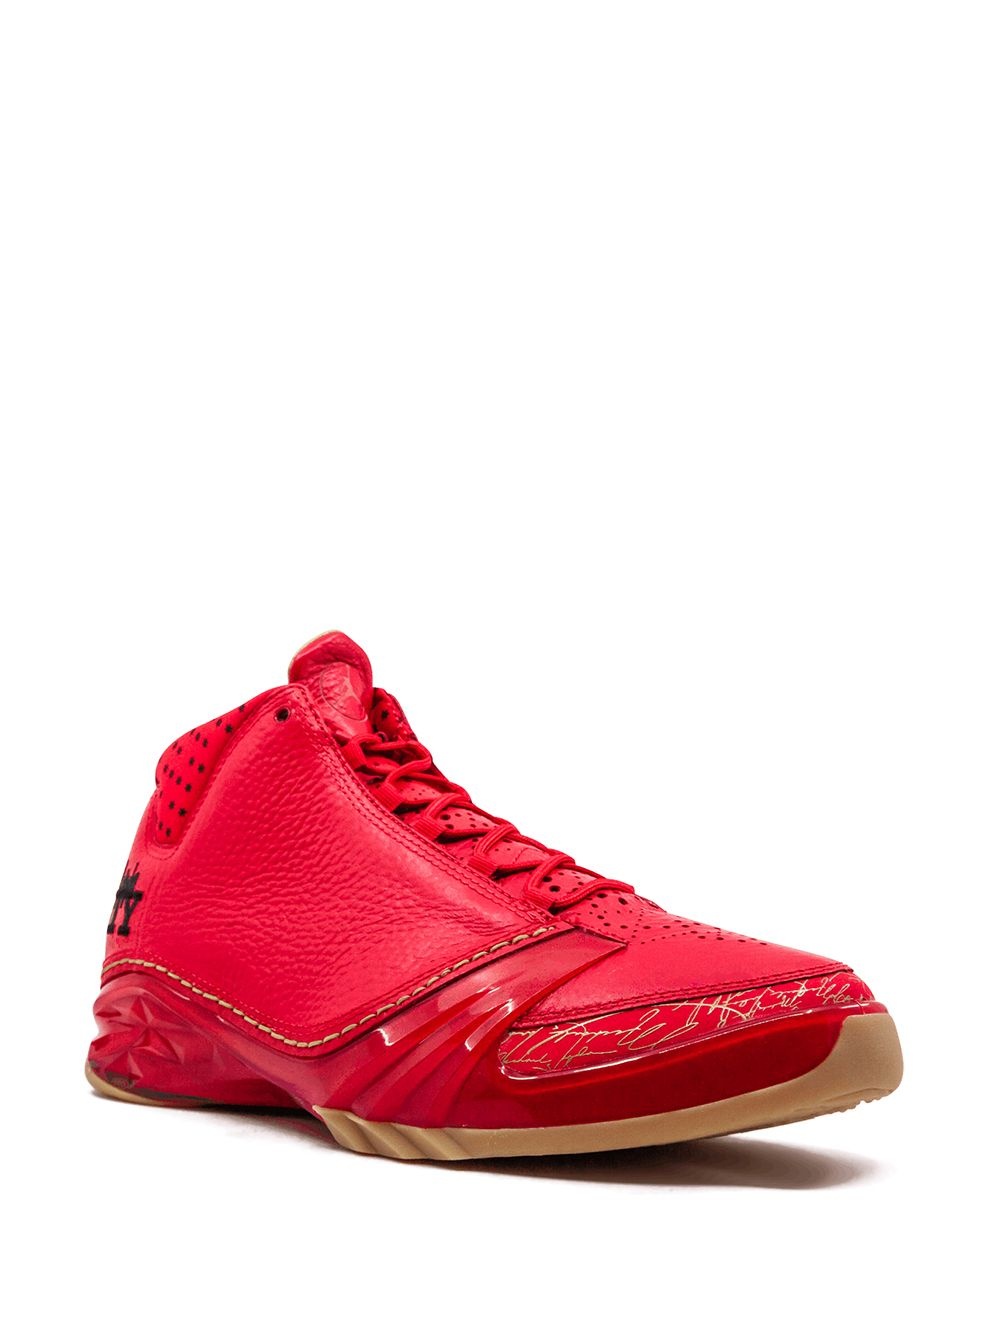 Air Jordan 23 “Chicago” sneakers - 2